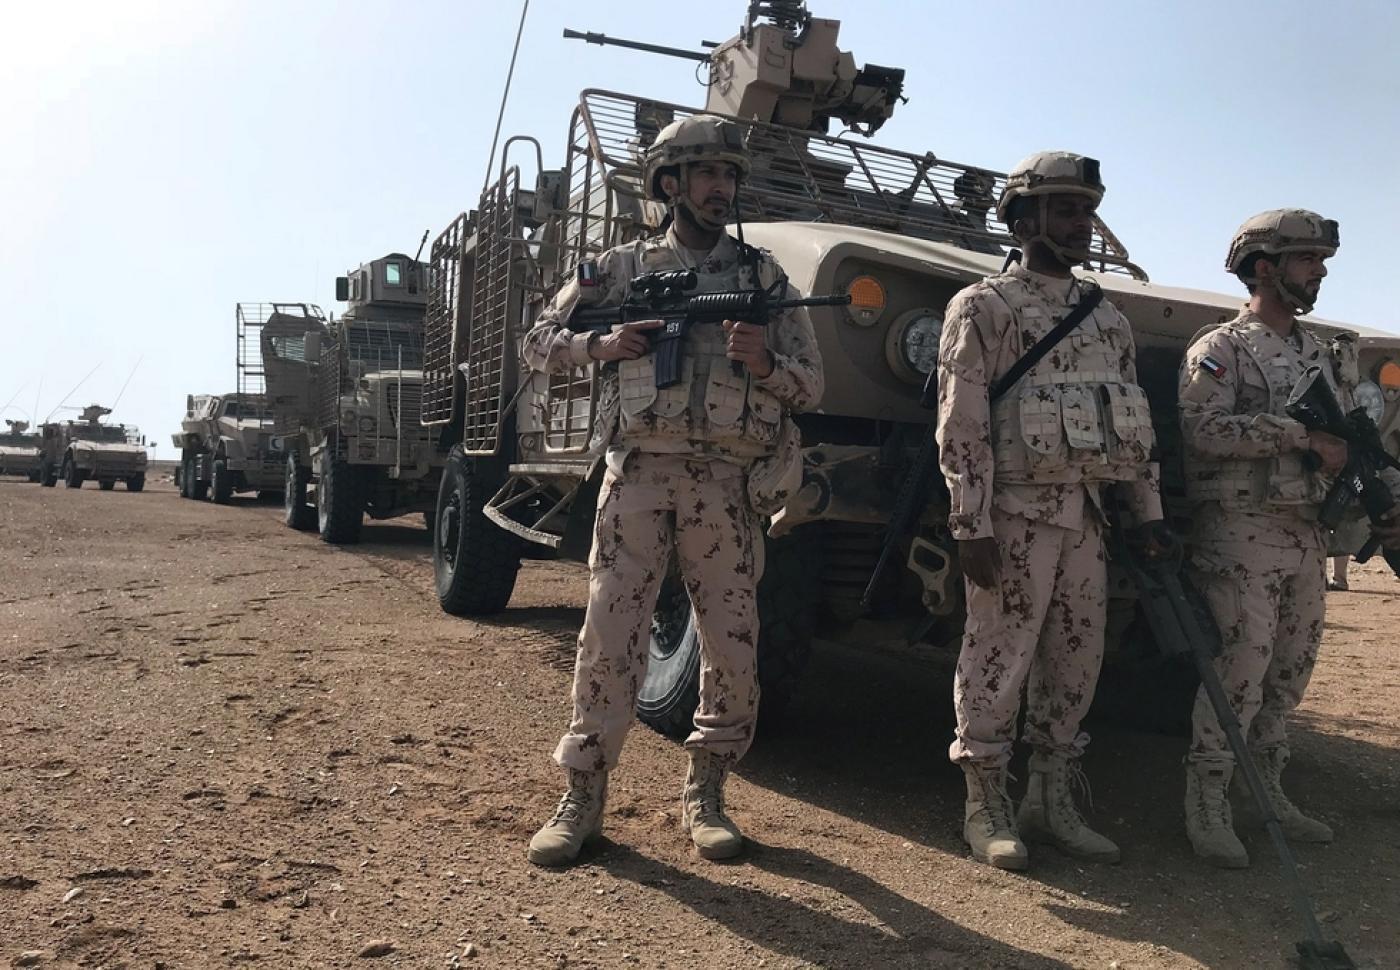 Au Yémen, où ils luttent contre les rebelles houthis, les soldats émiratis ont été accusés d’avoir causé des pertes civiles et d’avoir commis des abus (Reuters)